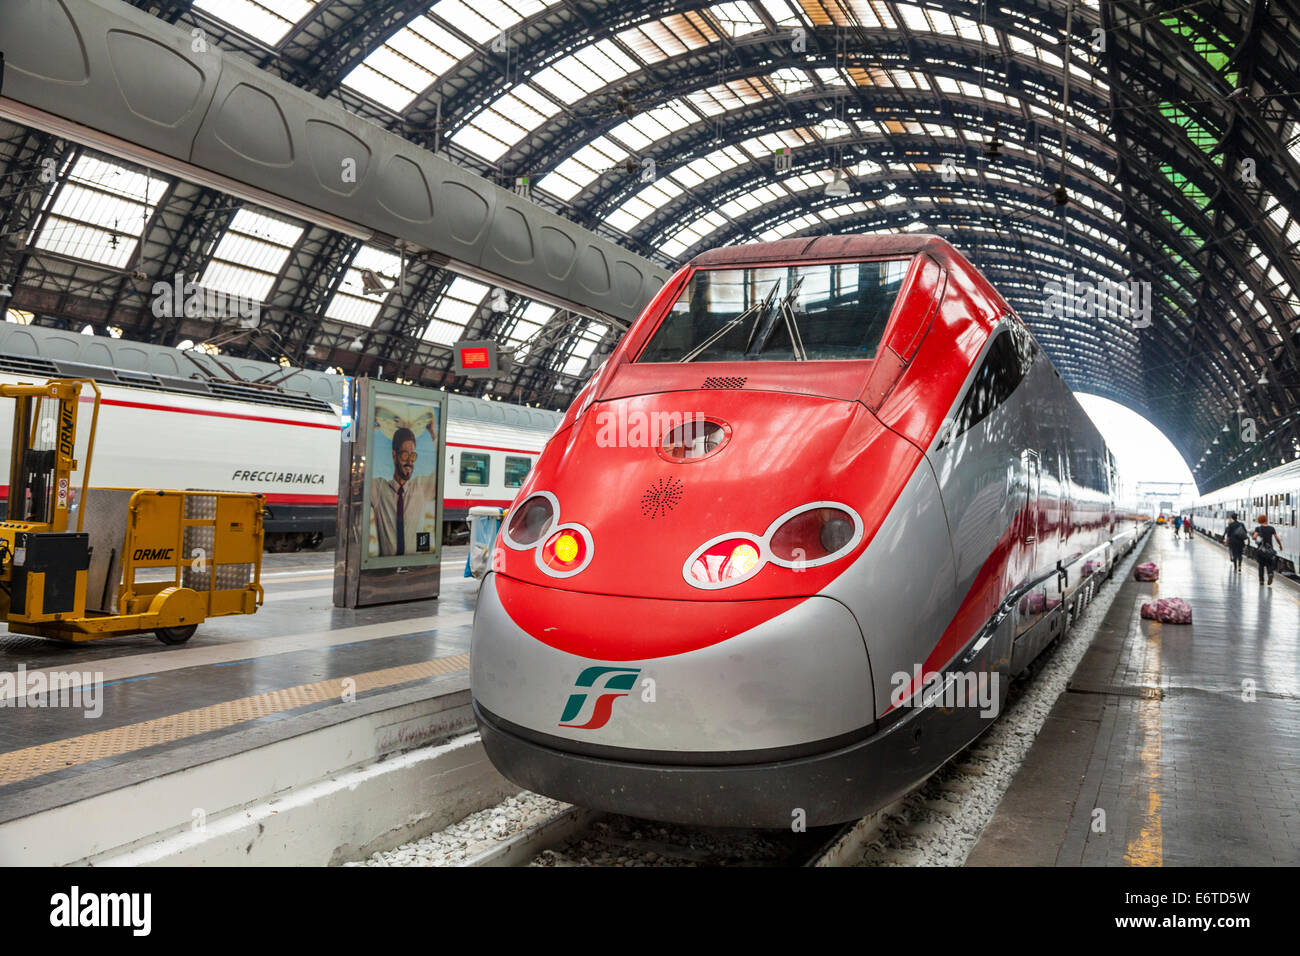 Freccia Rossa train à grande vitesse dans la gare centrale de Milan - Stazione Centrale de Milan - Italie Banque D'Images